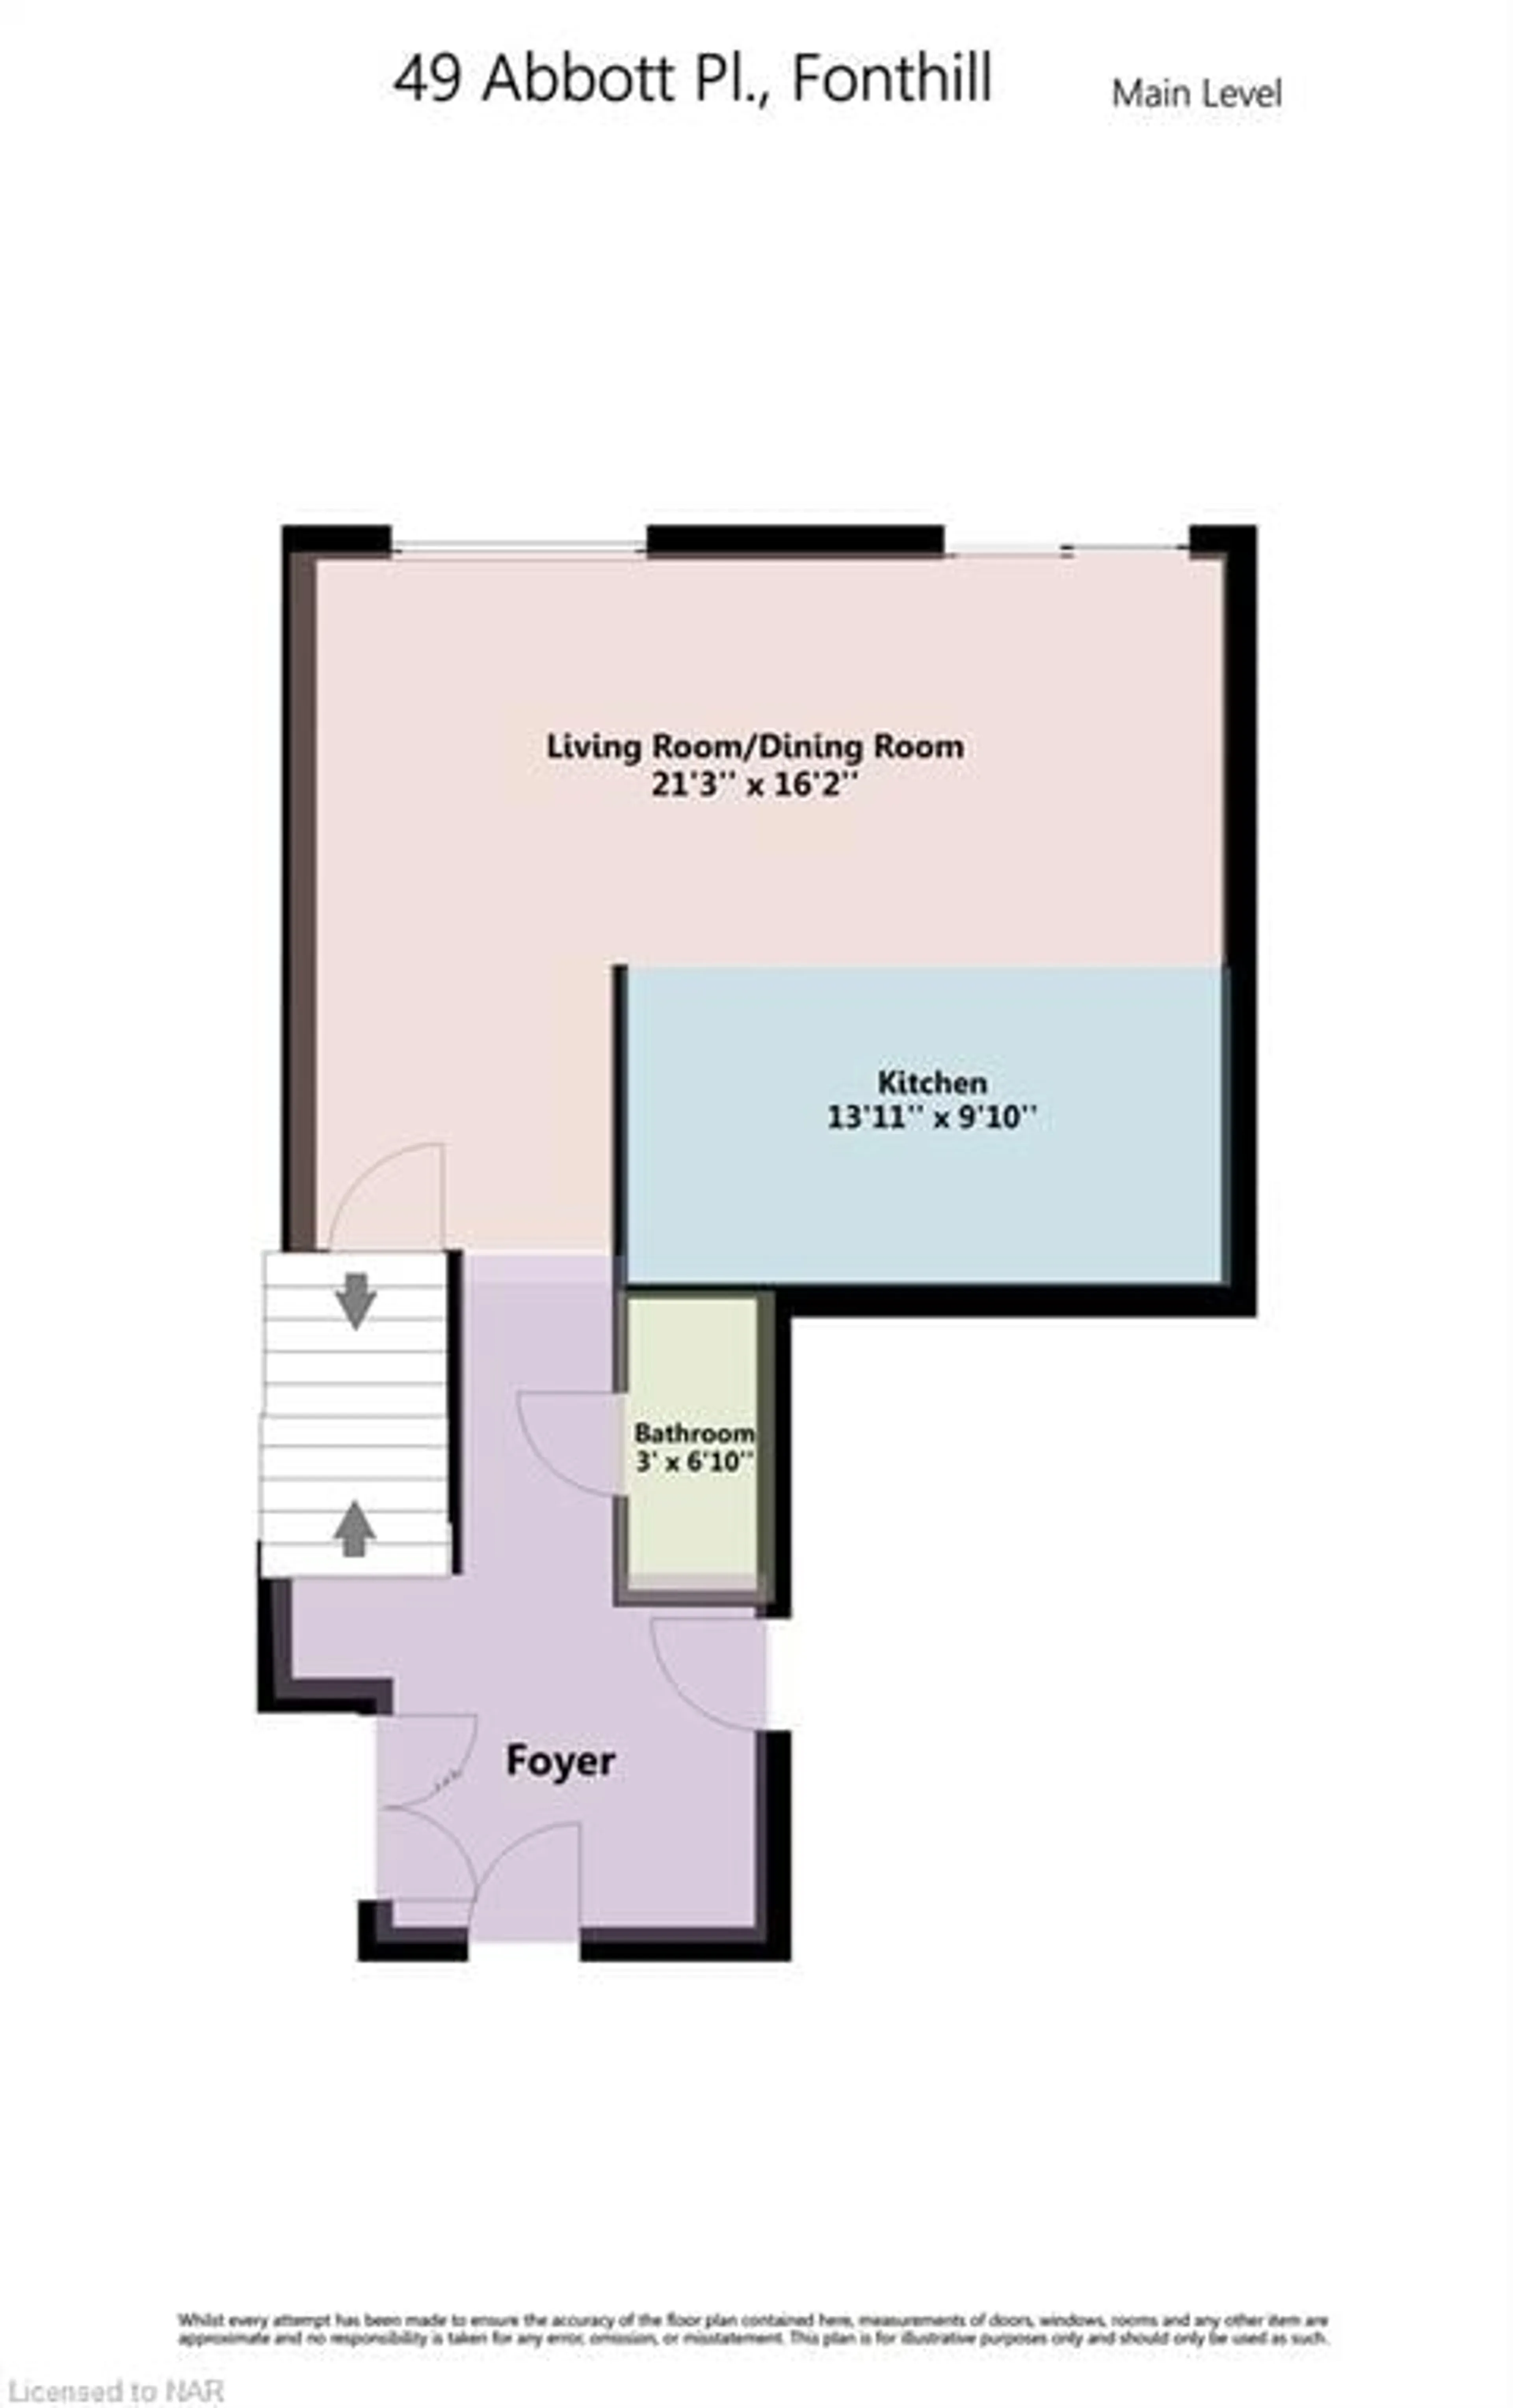 Floor plan for 49 Abbott Place, Fonthill Ontario L0S 1E5